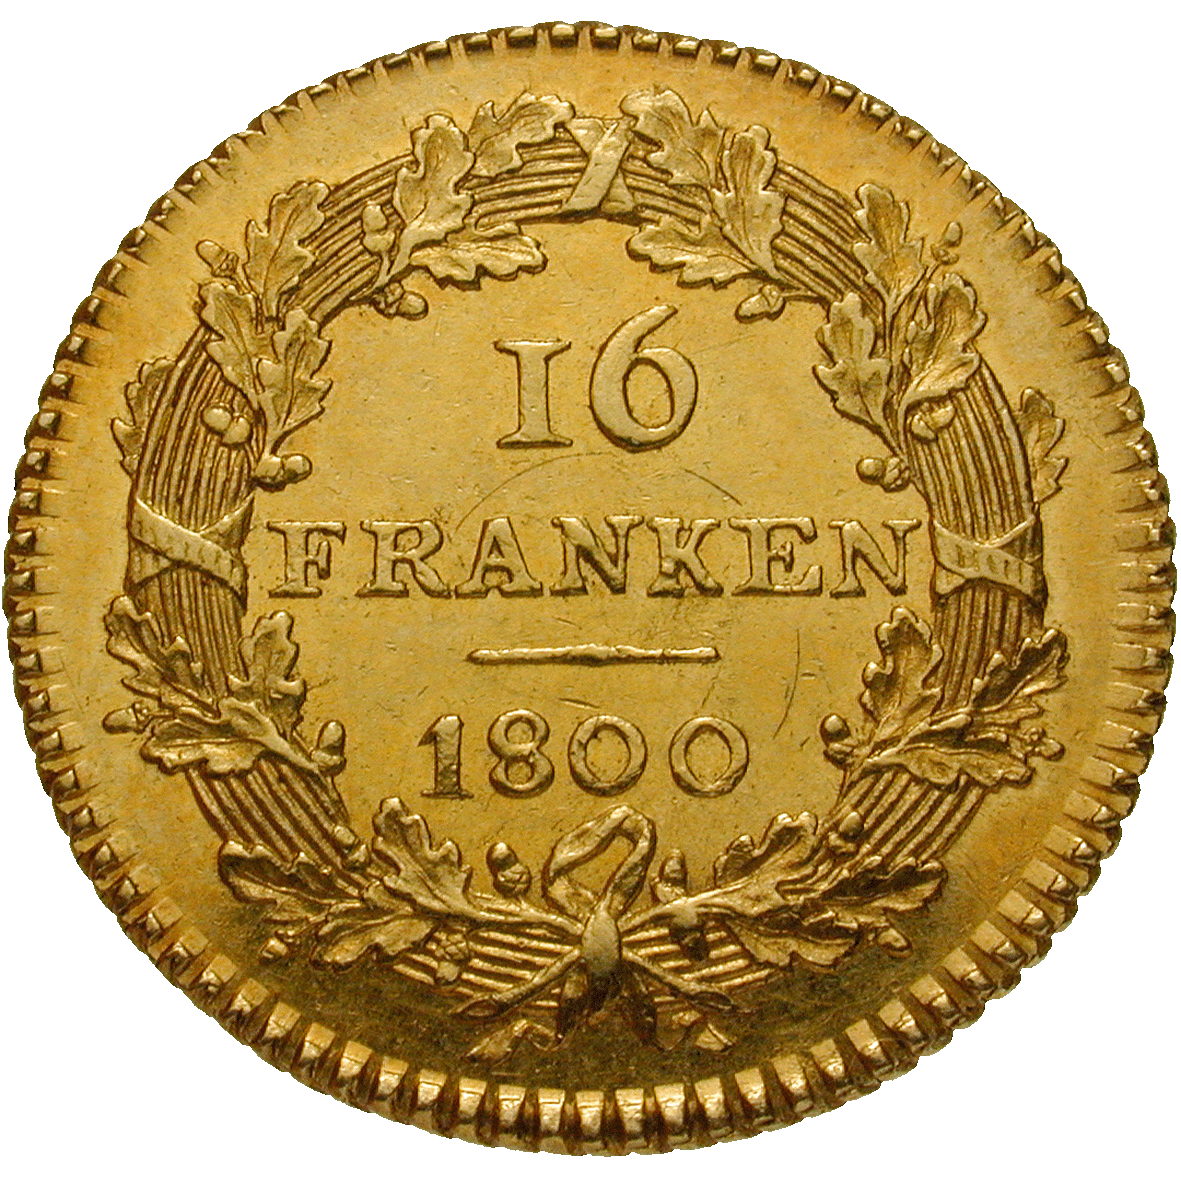 Helvetische Republik, 16 Franken 1800 (reverse)